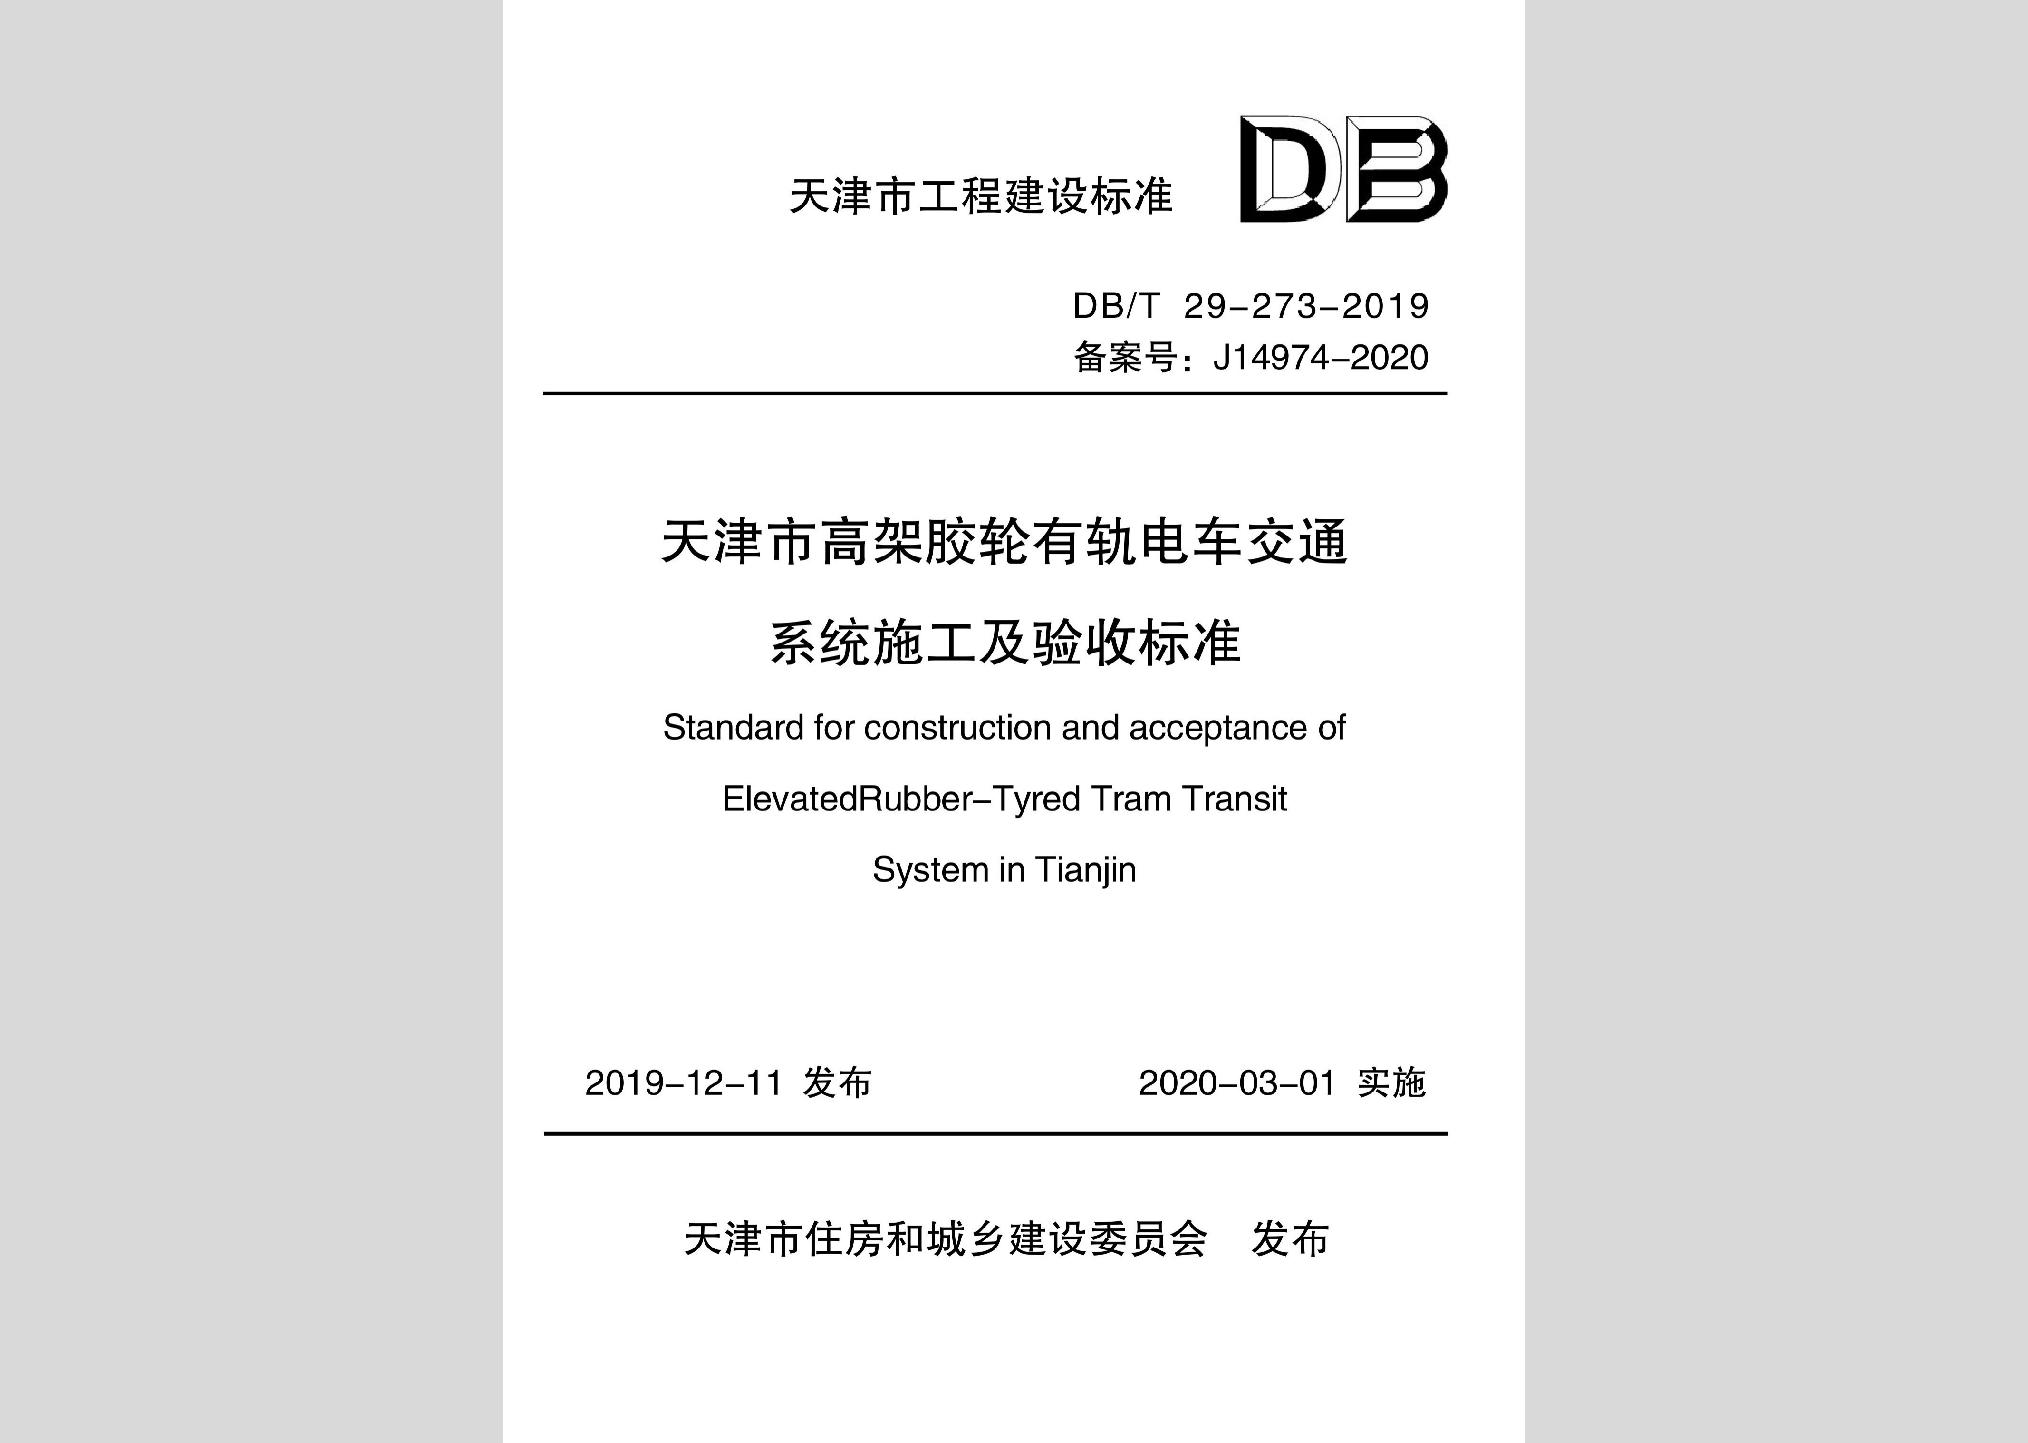 DB/T29-273-2019：天津市高架胶轮有轨电车交通系统施工及验收标准